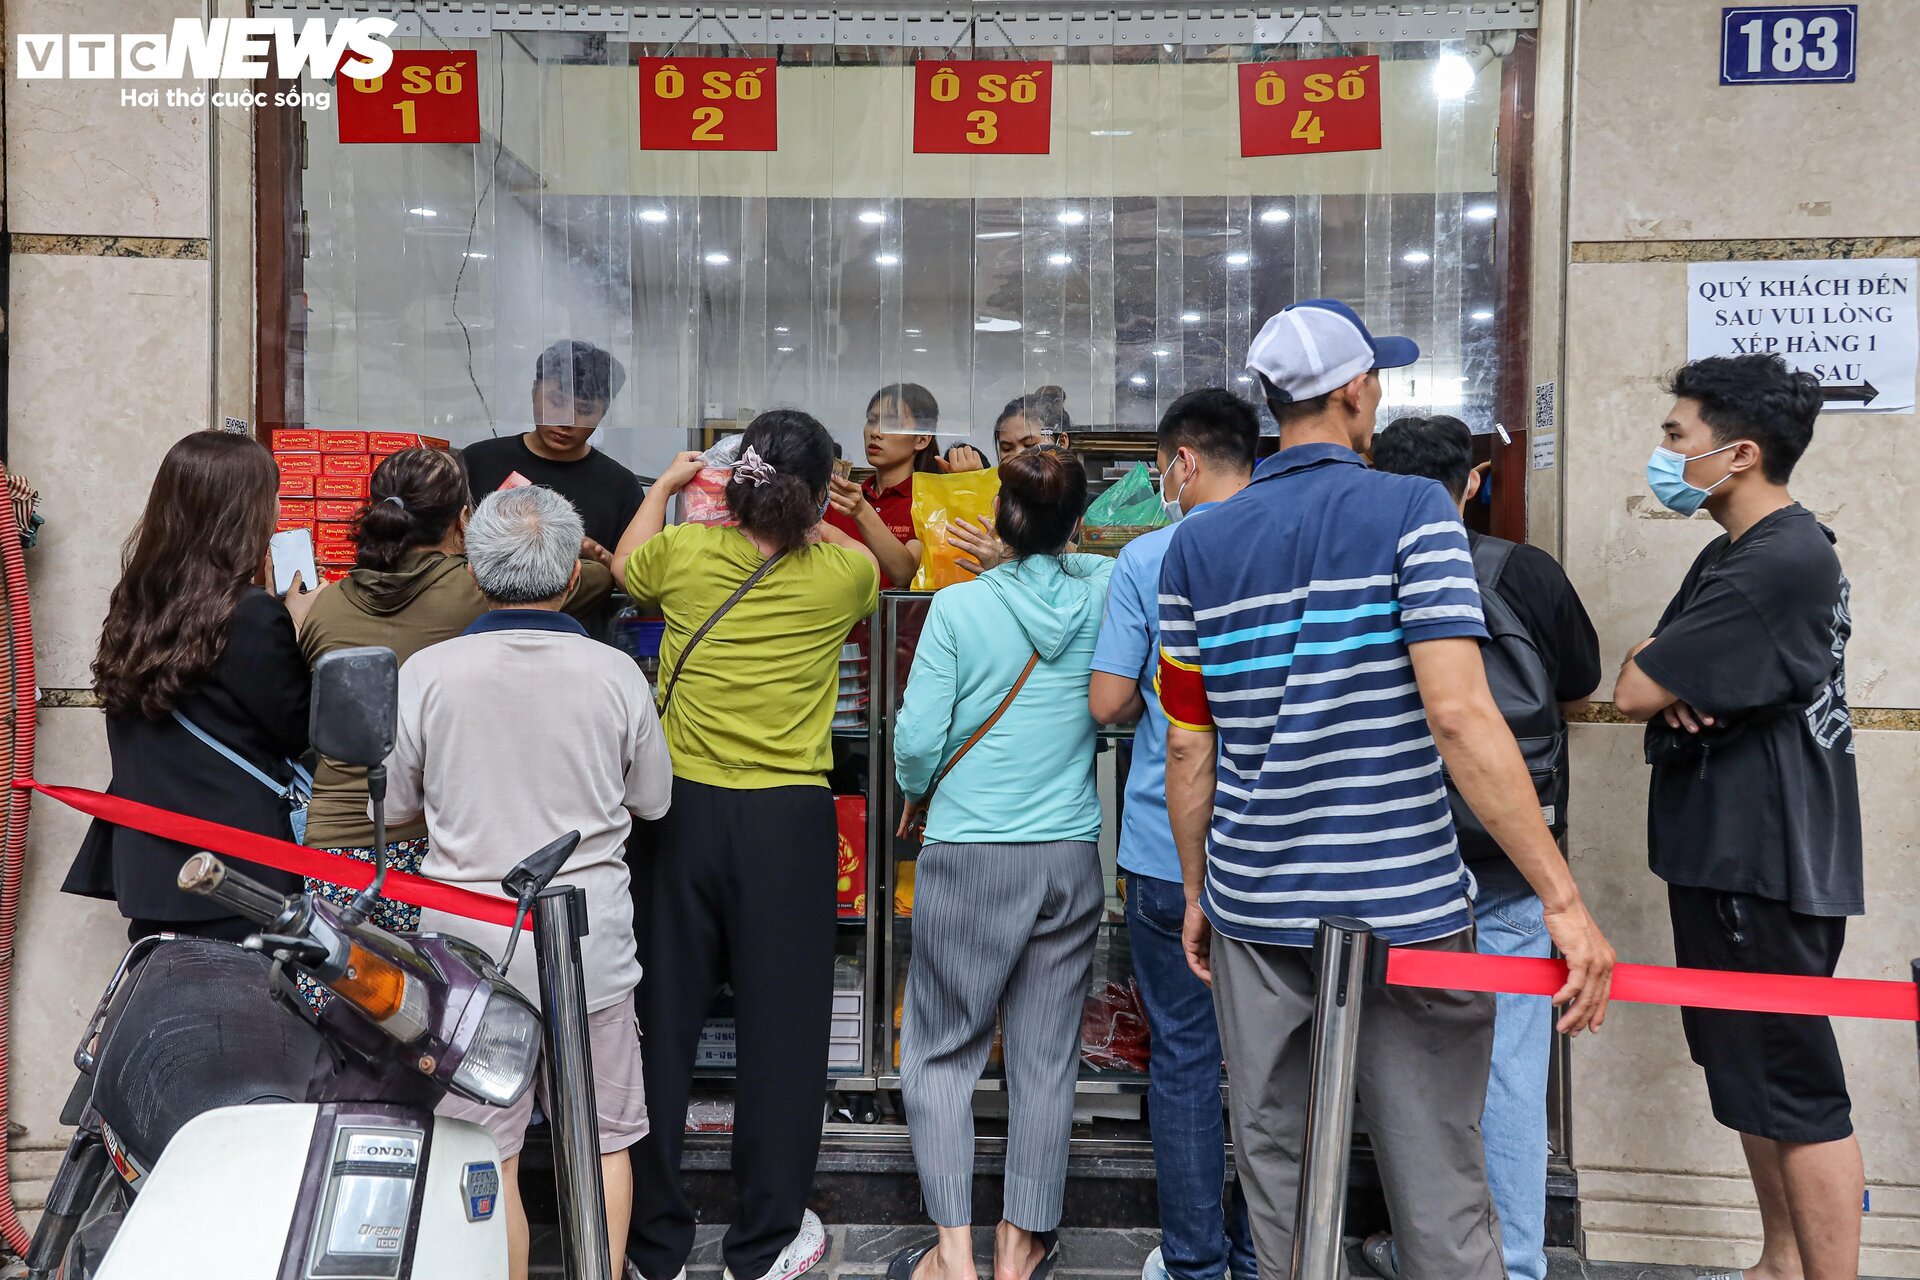 Hàng trăm người xếp hàng chờ mua bánh trung thu ở Hà Nội - Ảnh 3.